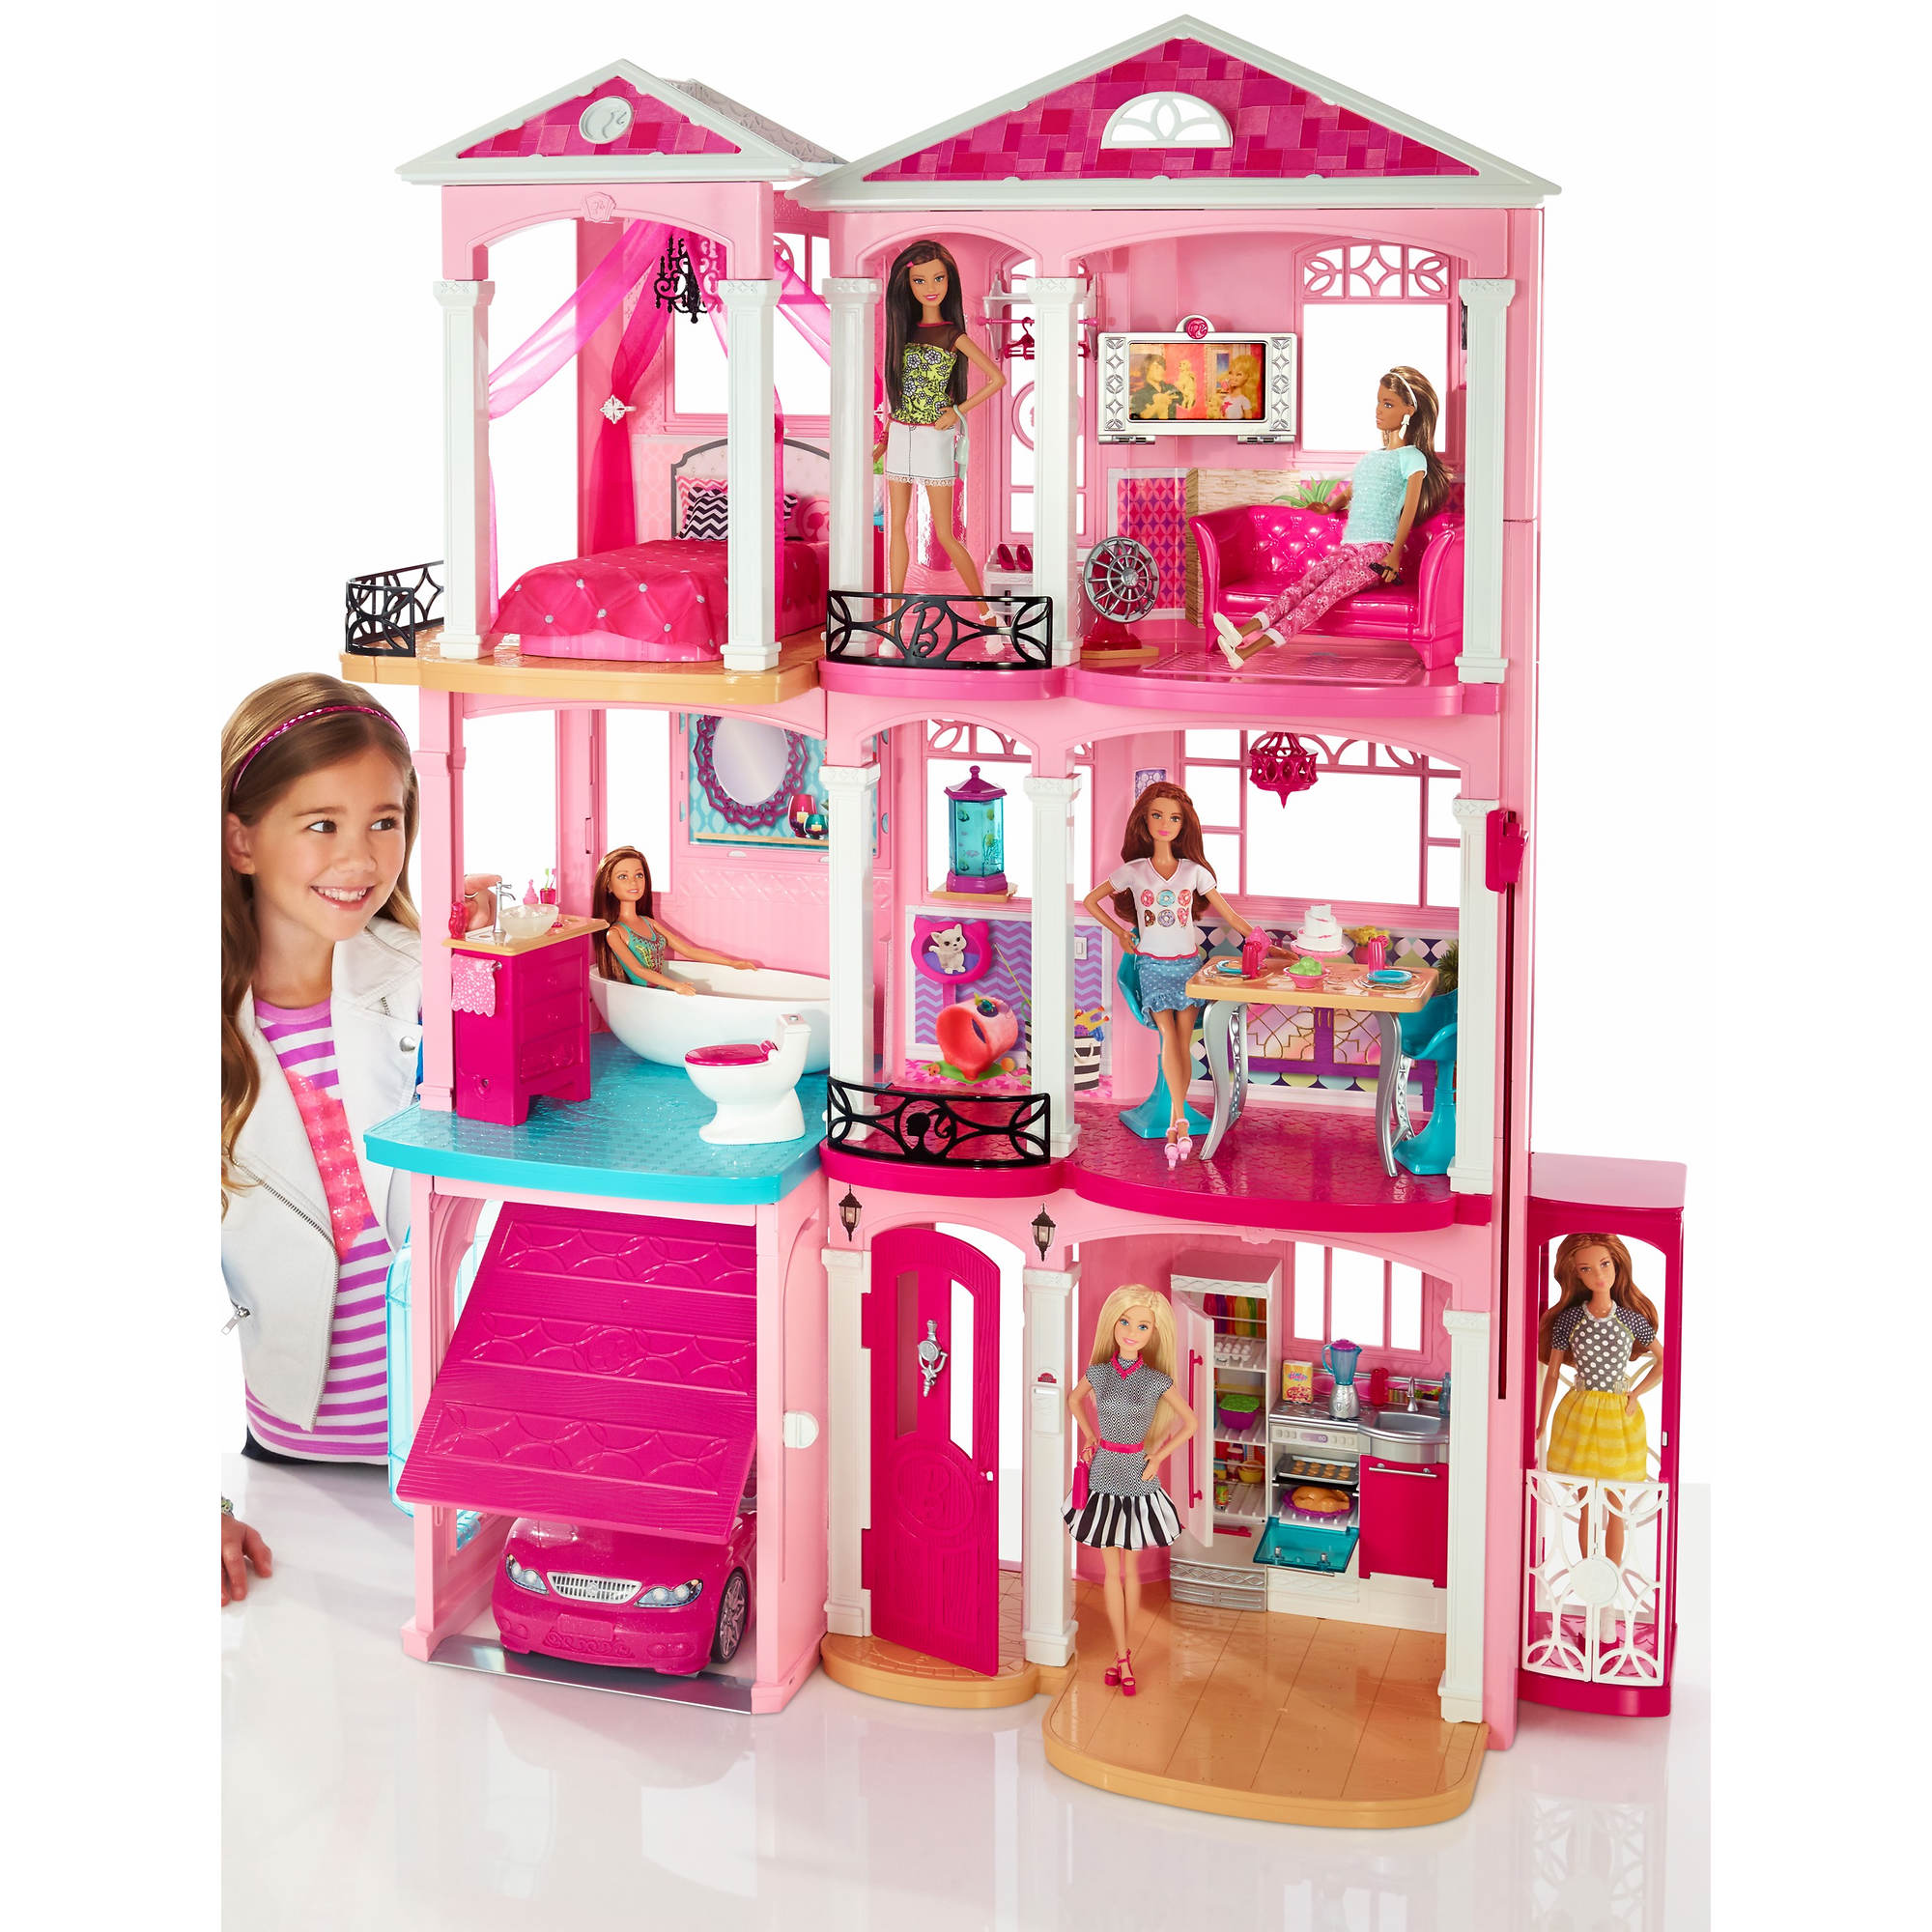 Лучший дом барби. Набор Barbie дом мечты ffy84. Барби Dreamhouse кукла. Barbie новый дом мечты cjr47. Домик Барби Малибу.